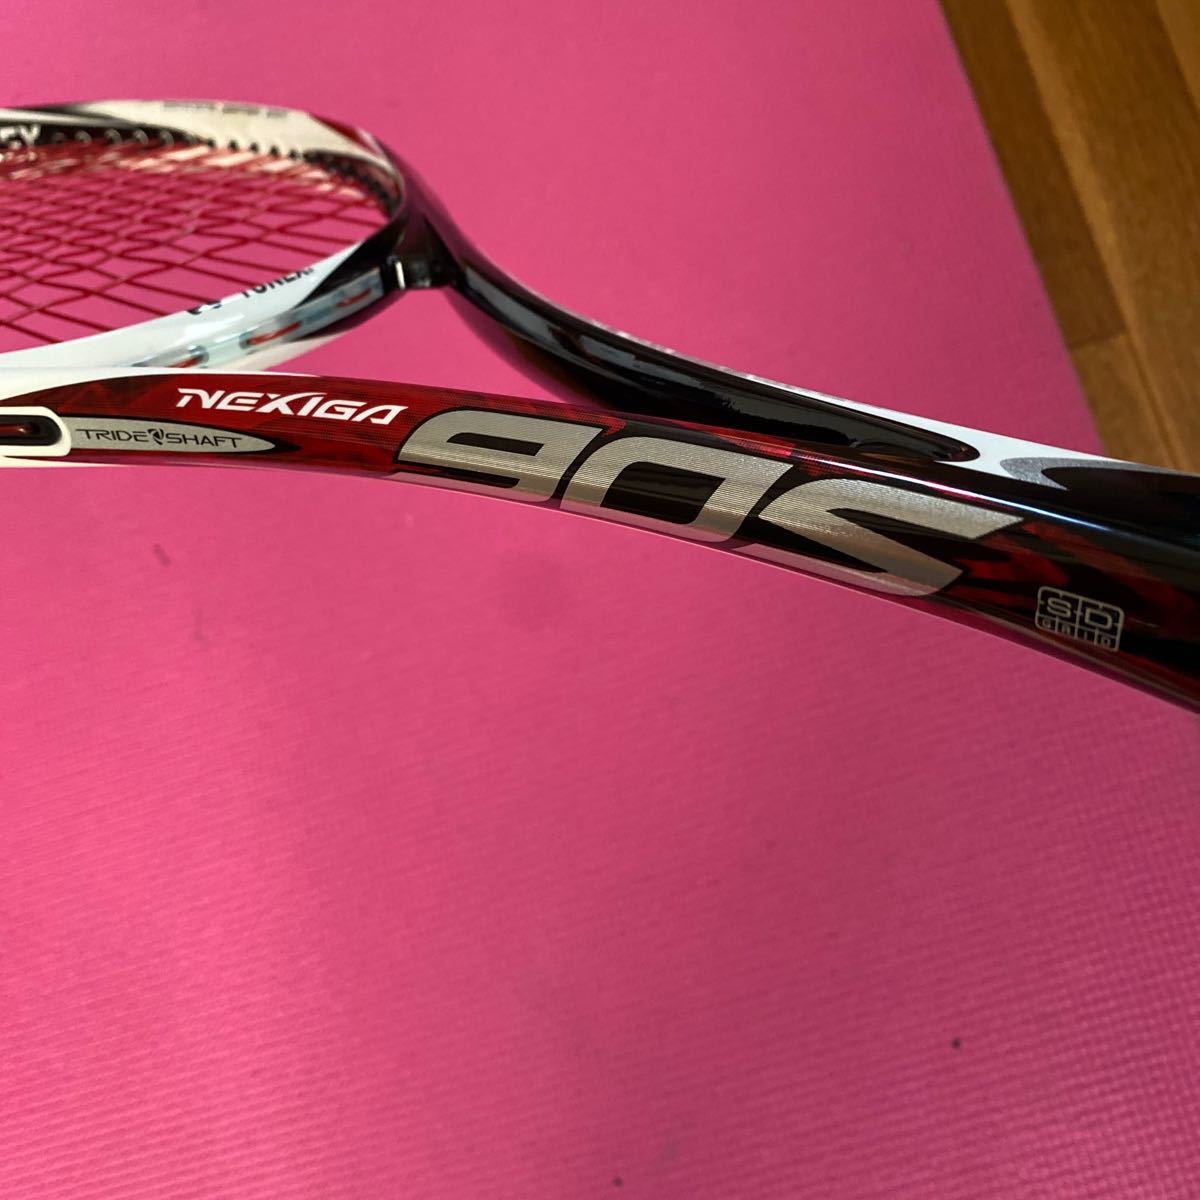 ◆YONEX ヨネックス NEXIGA 90S ソフトテニスラケット UL1サイズ 85SQ.in USED美品◆ストローク向け_画像3